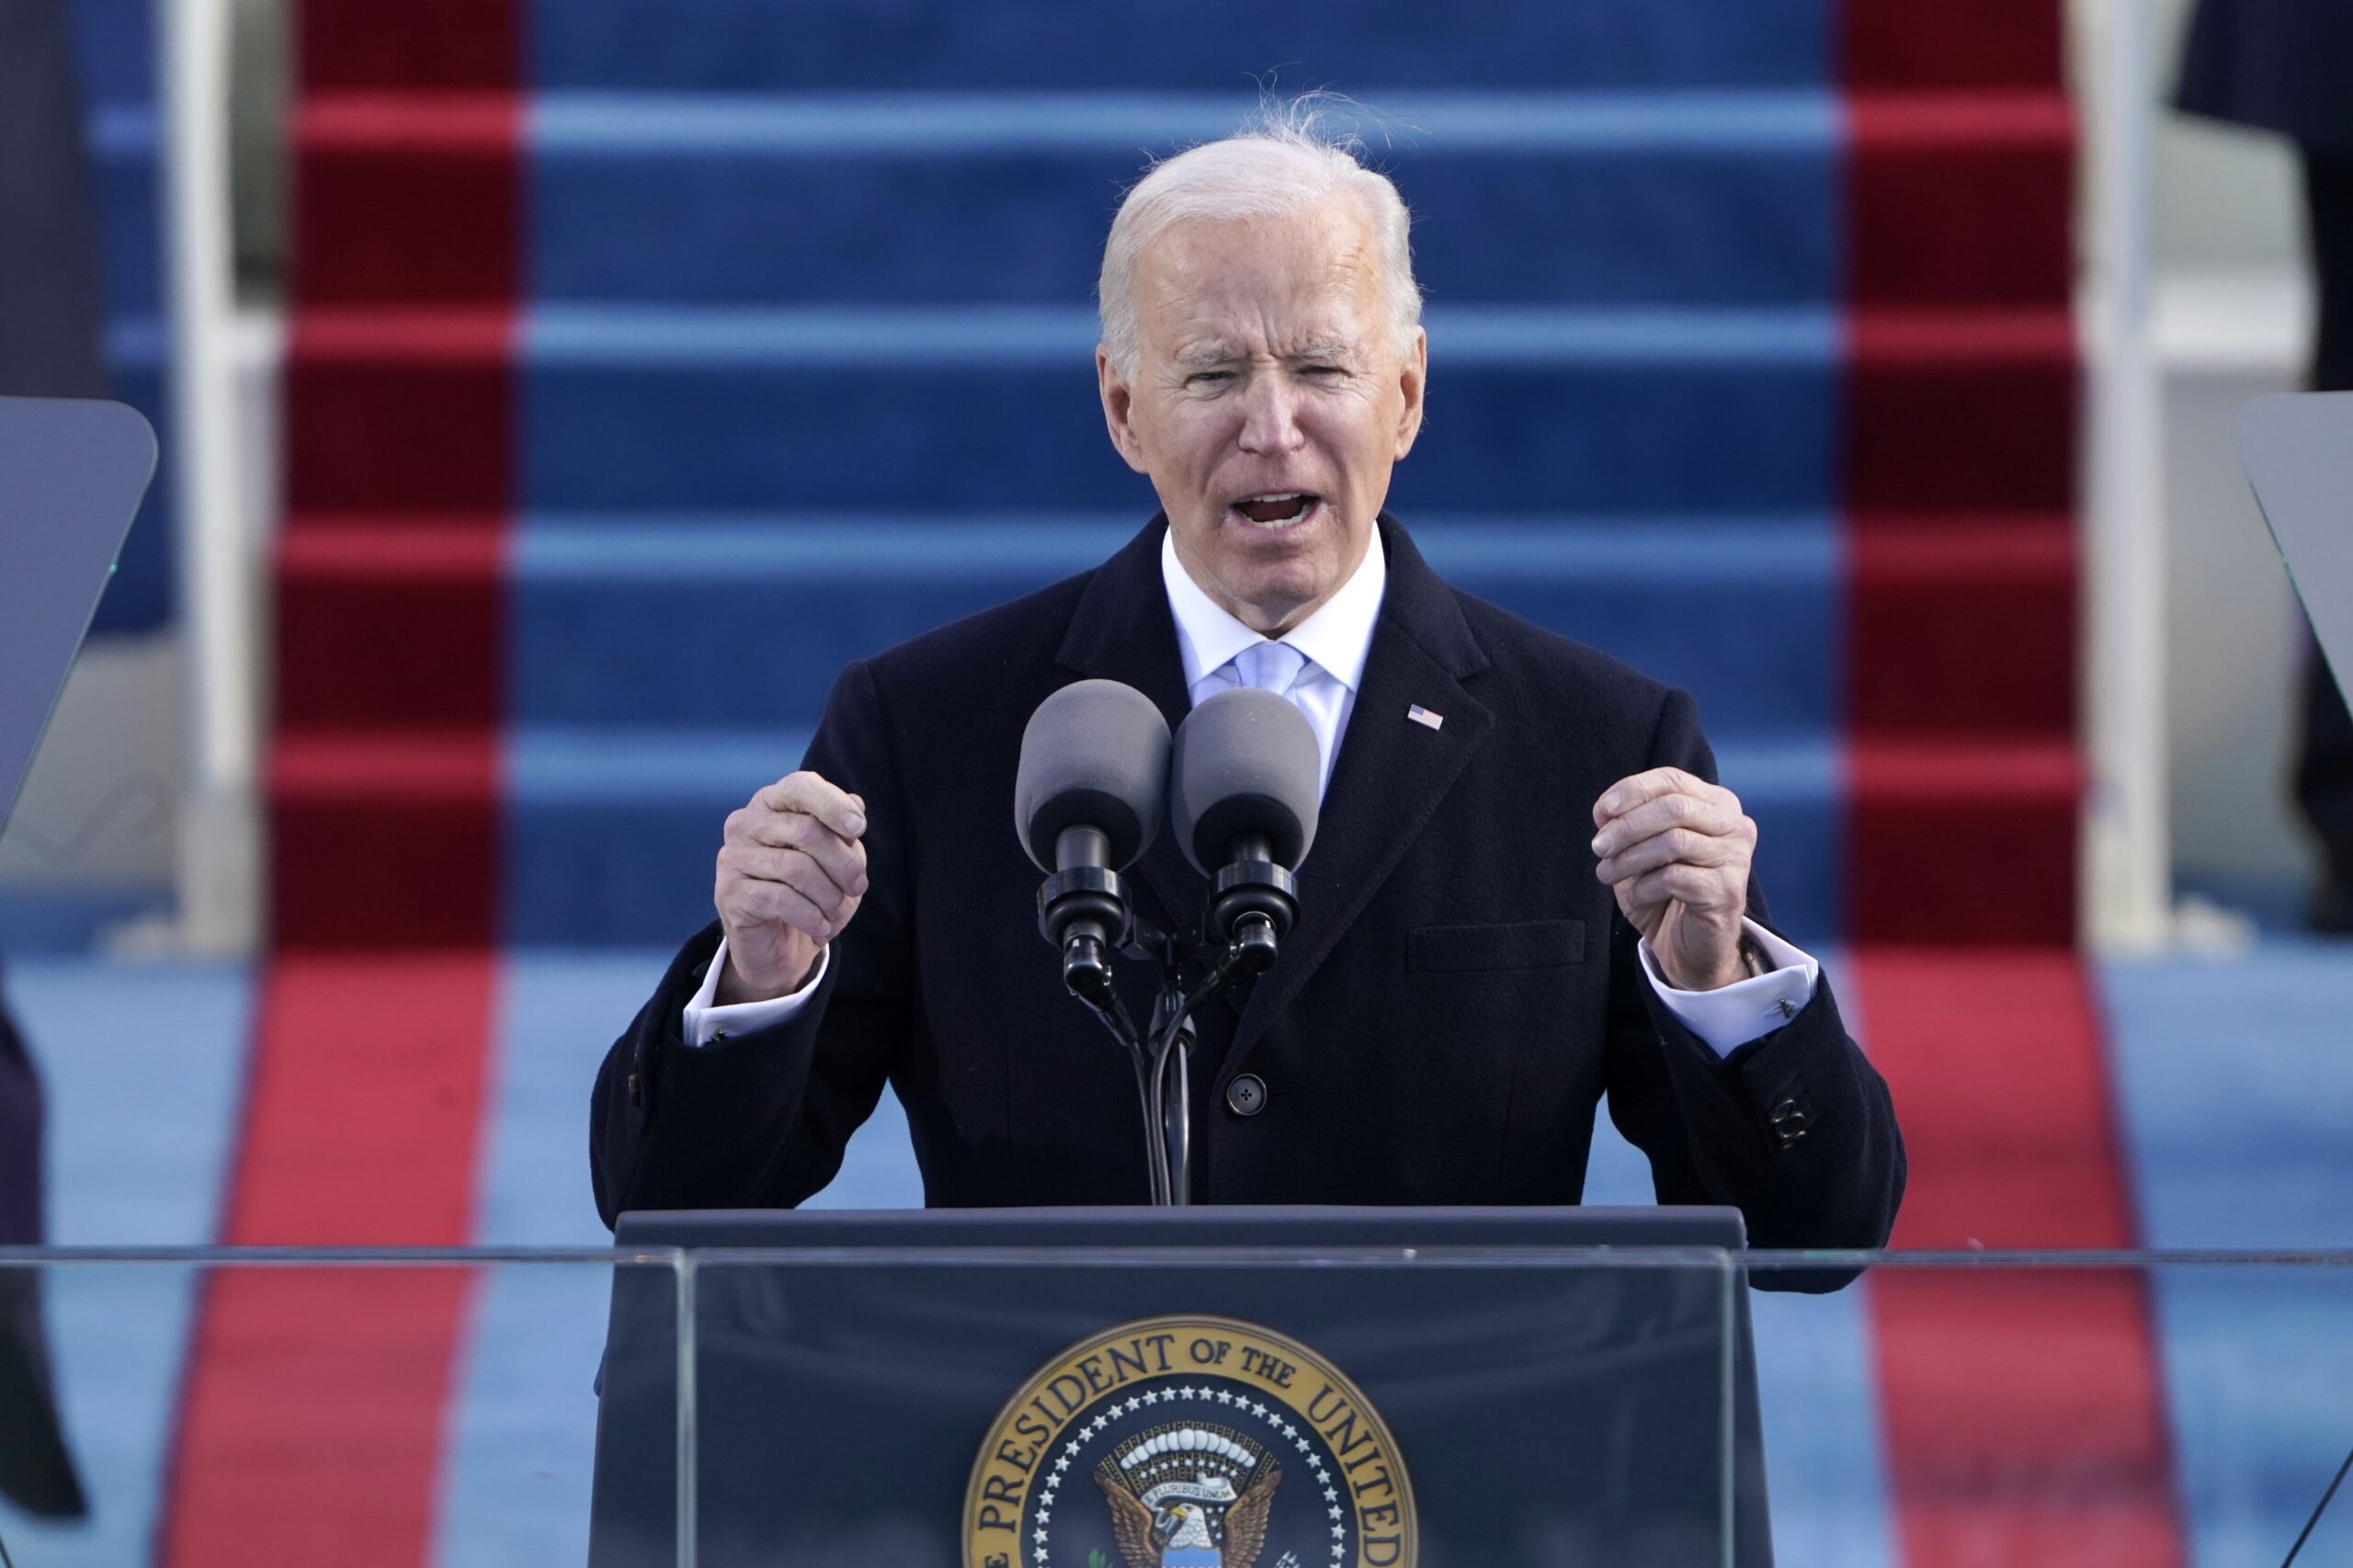 President Joe Biden speaks during the 59th Presidential Inauguration